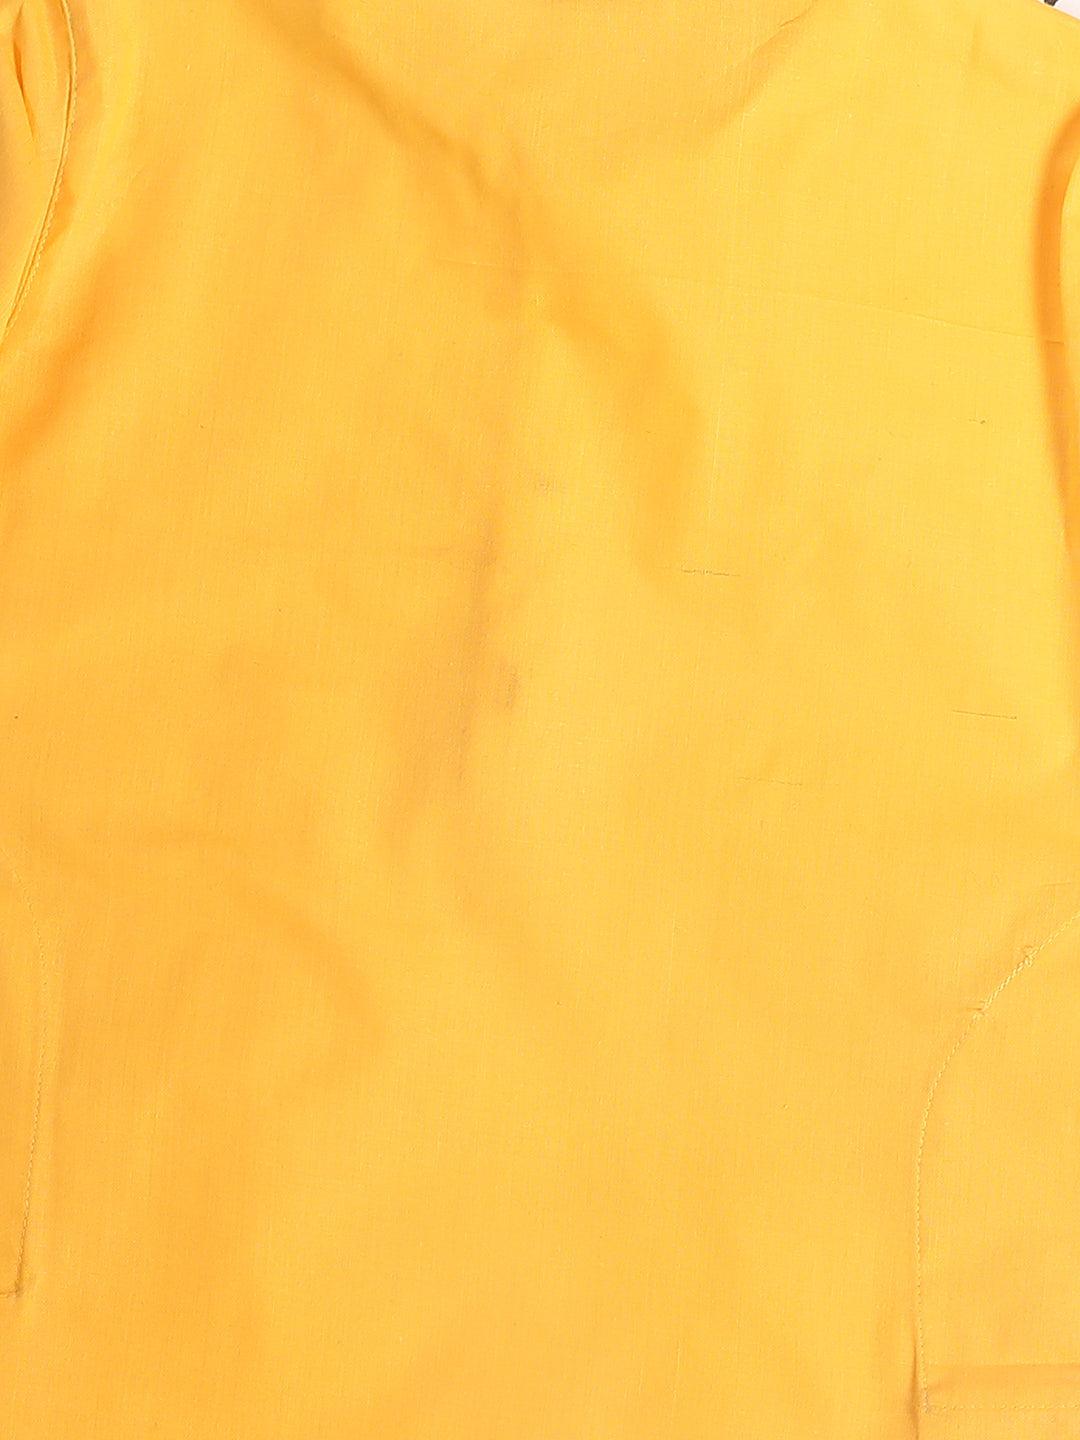 VASTRAMAY SISHU Boy's Yellow Kurta With White Pyjama set - Uboric